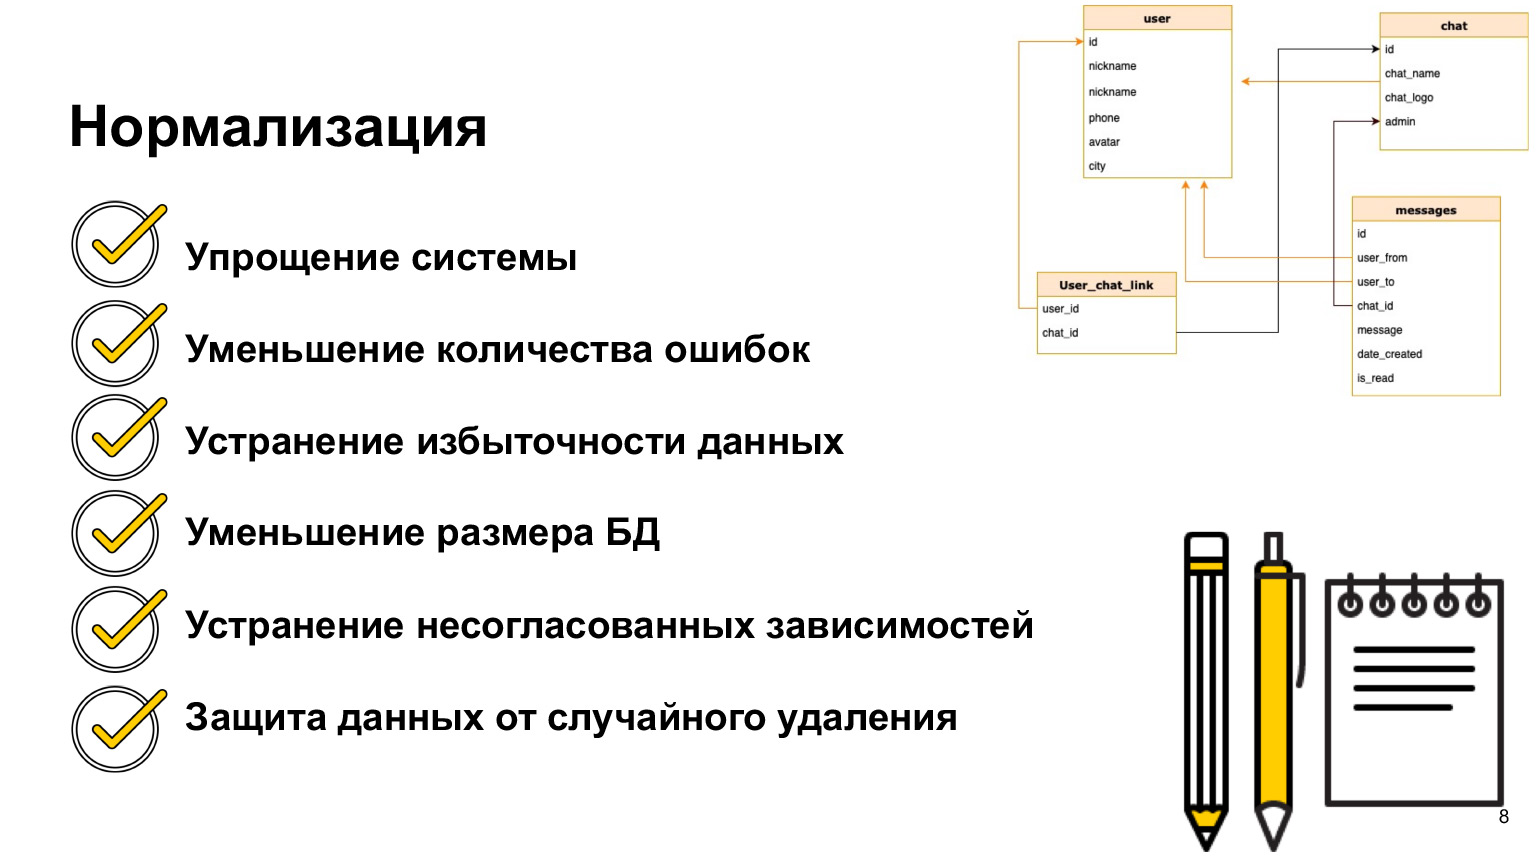 Базы данных: большой обзор типов и подходов. Доклад Яндекса - 6